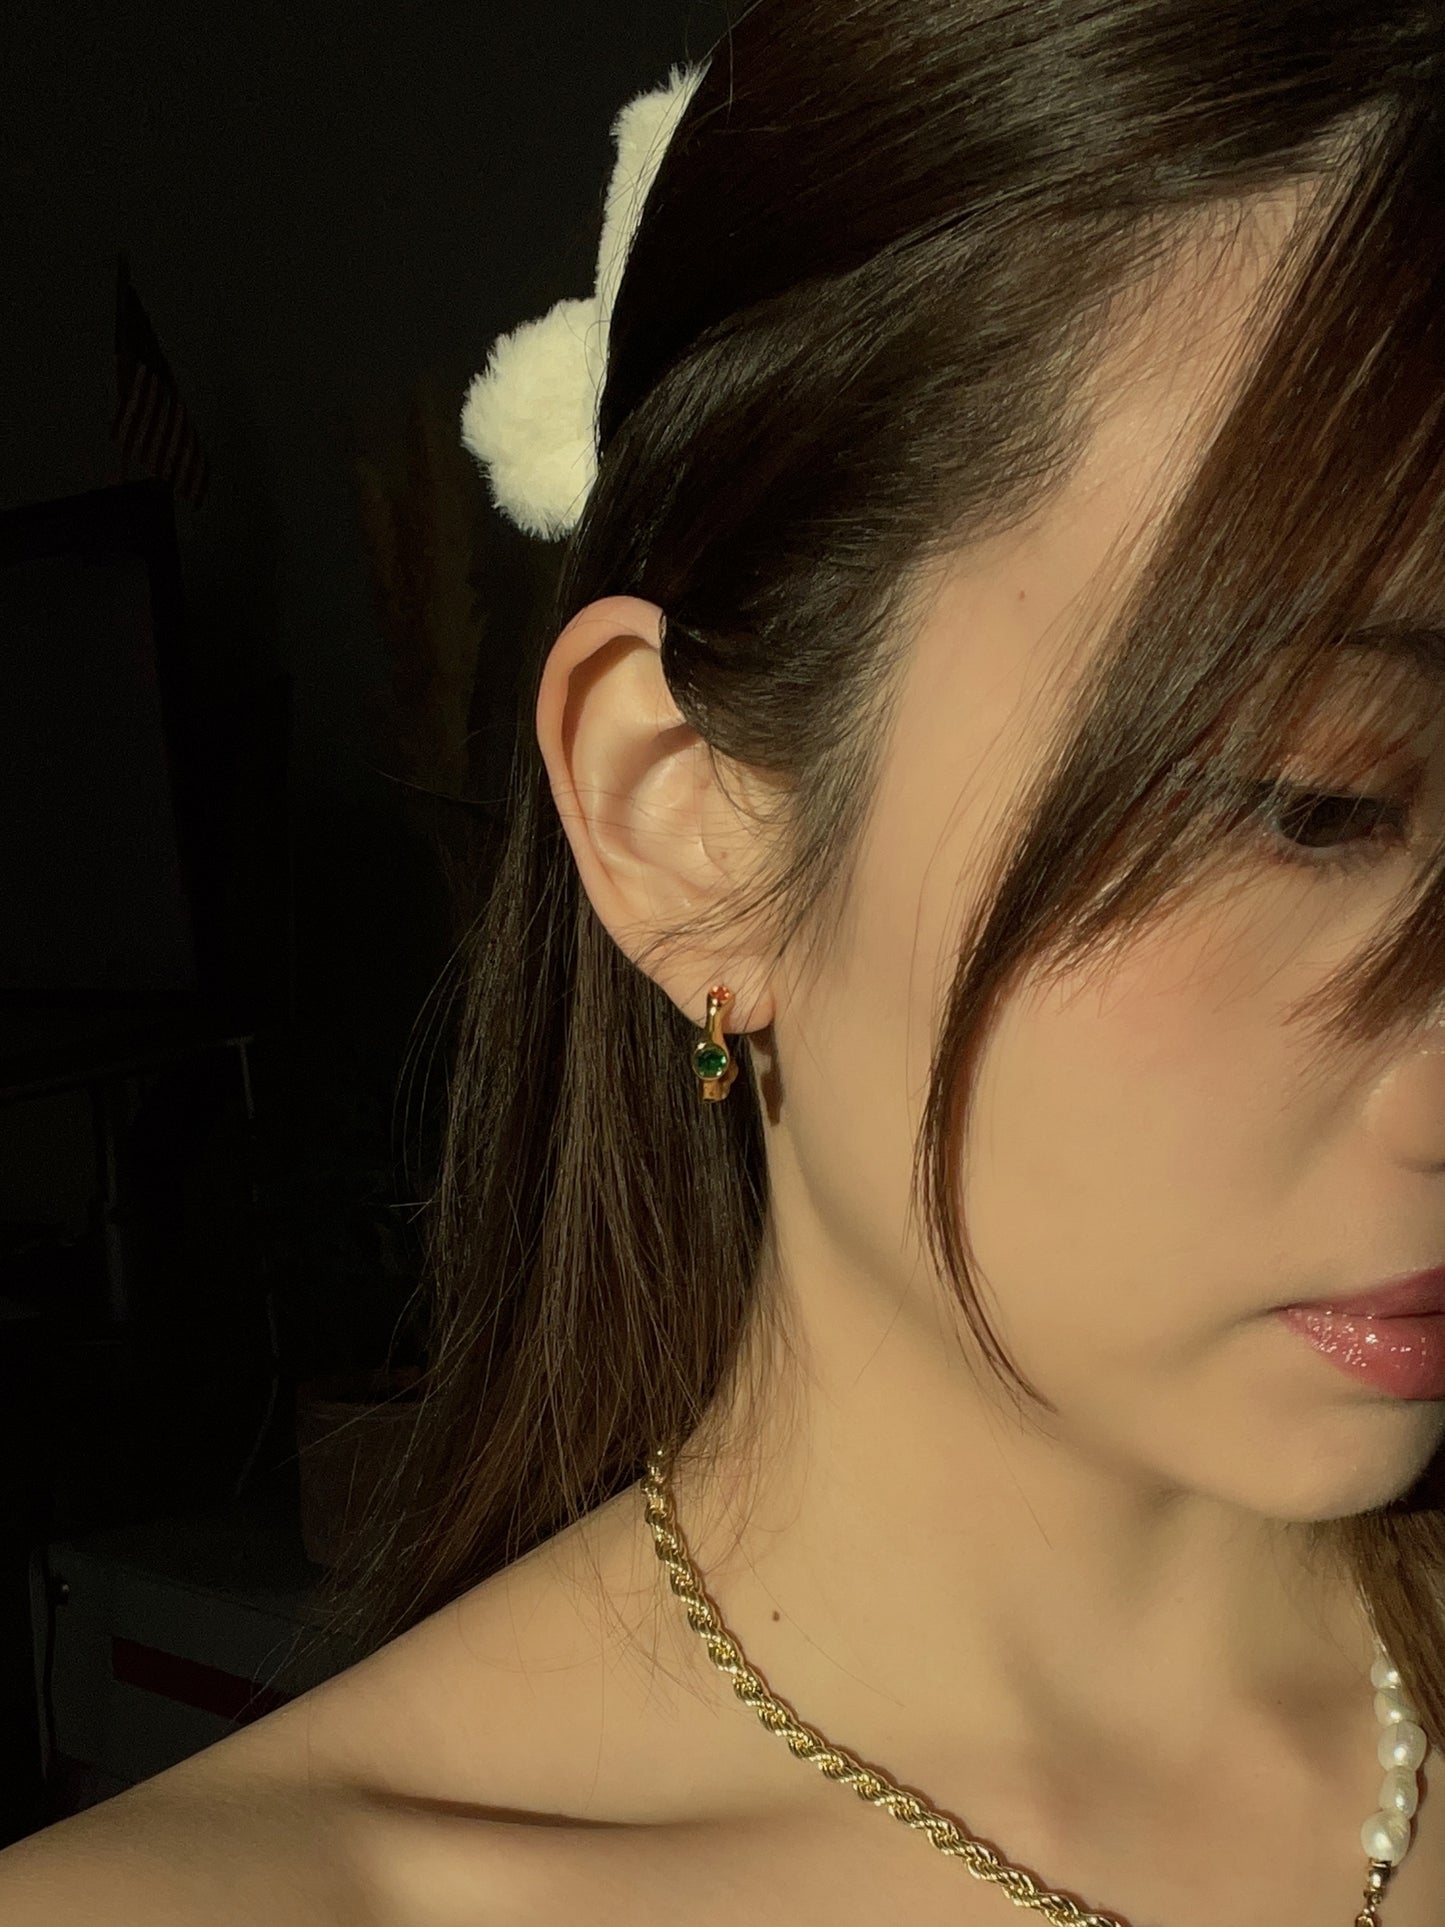 Bejeweled Earrings